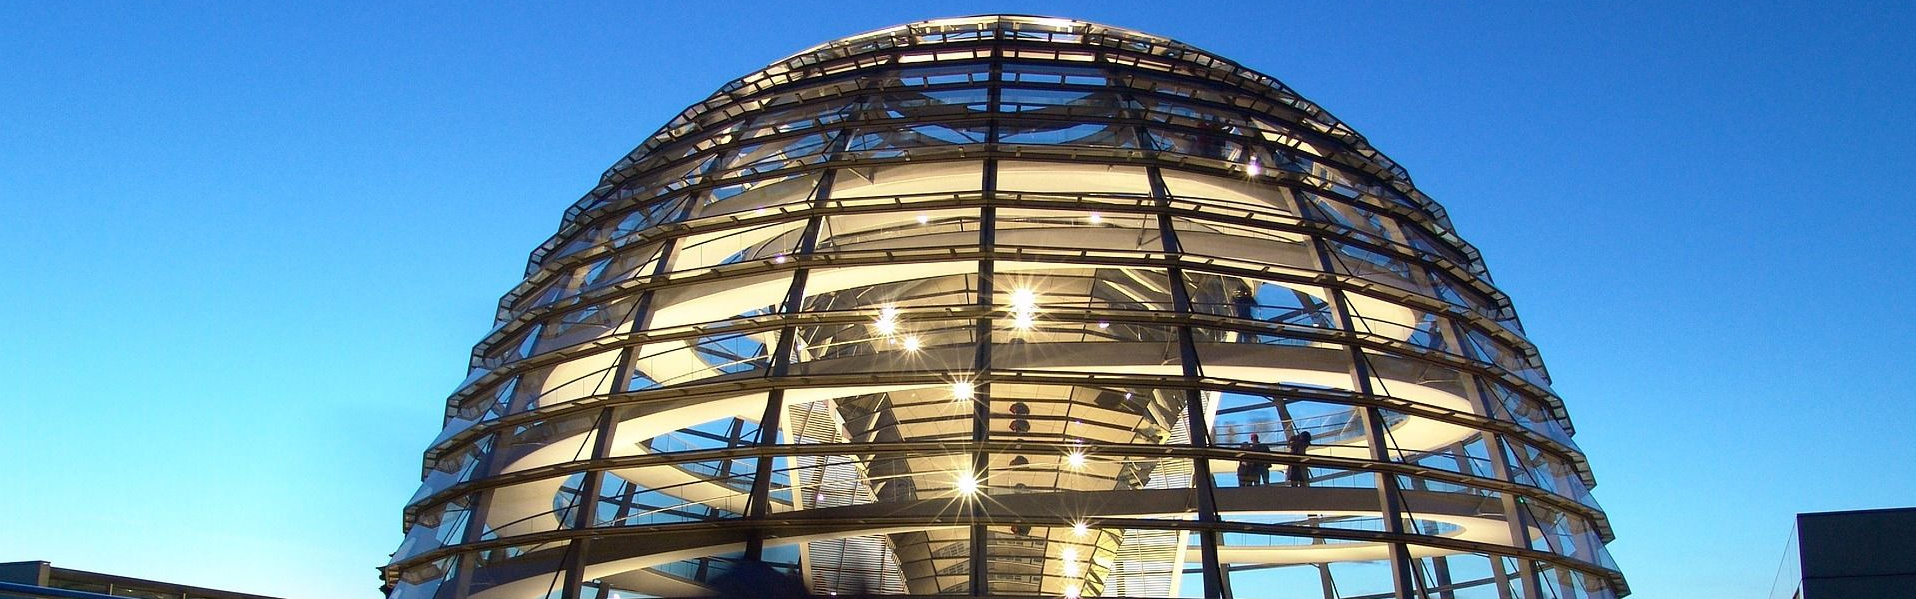 Die Kuppel des Reichstagsgebäudes in Berlin.